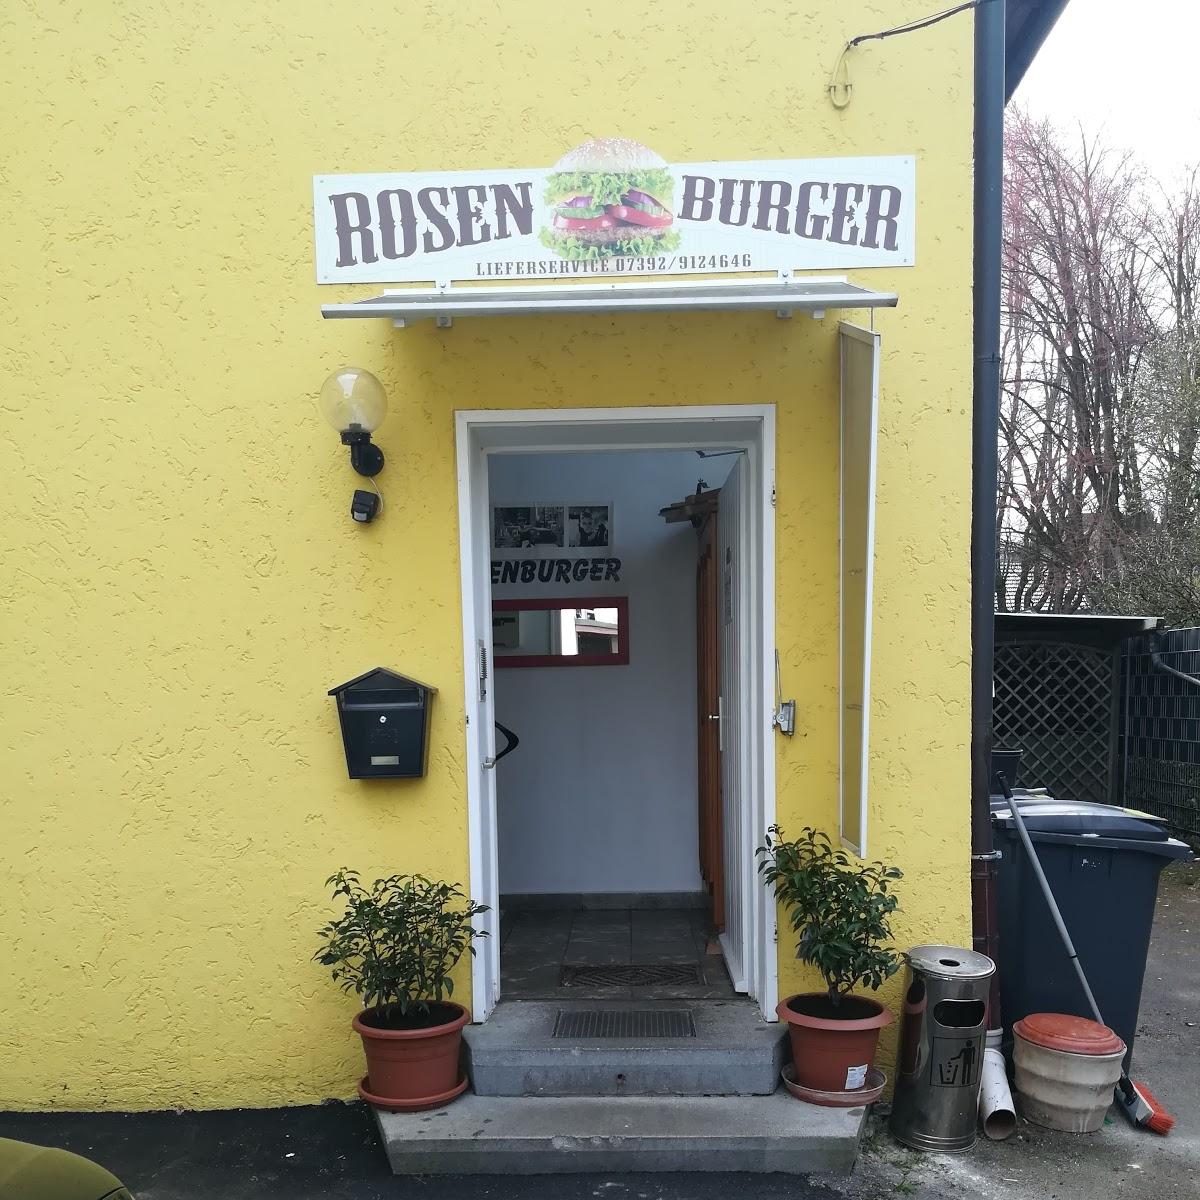 Restaurant "Rosenburger Lieferservice" in  Laupheim